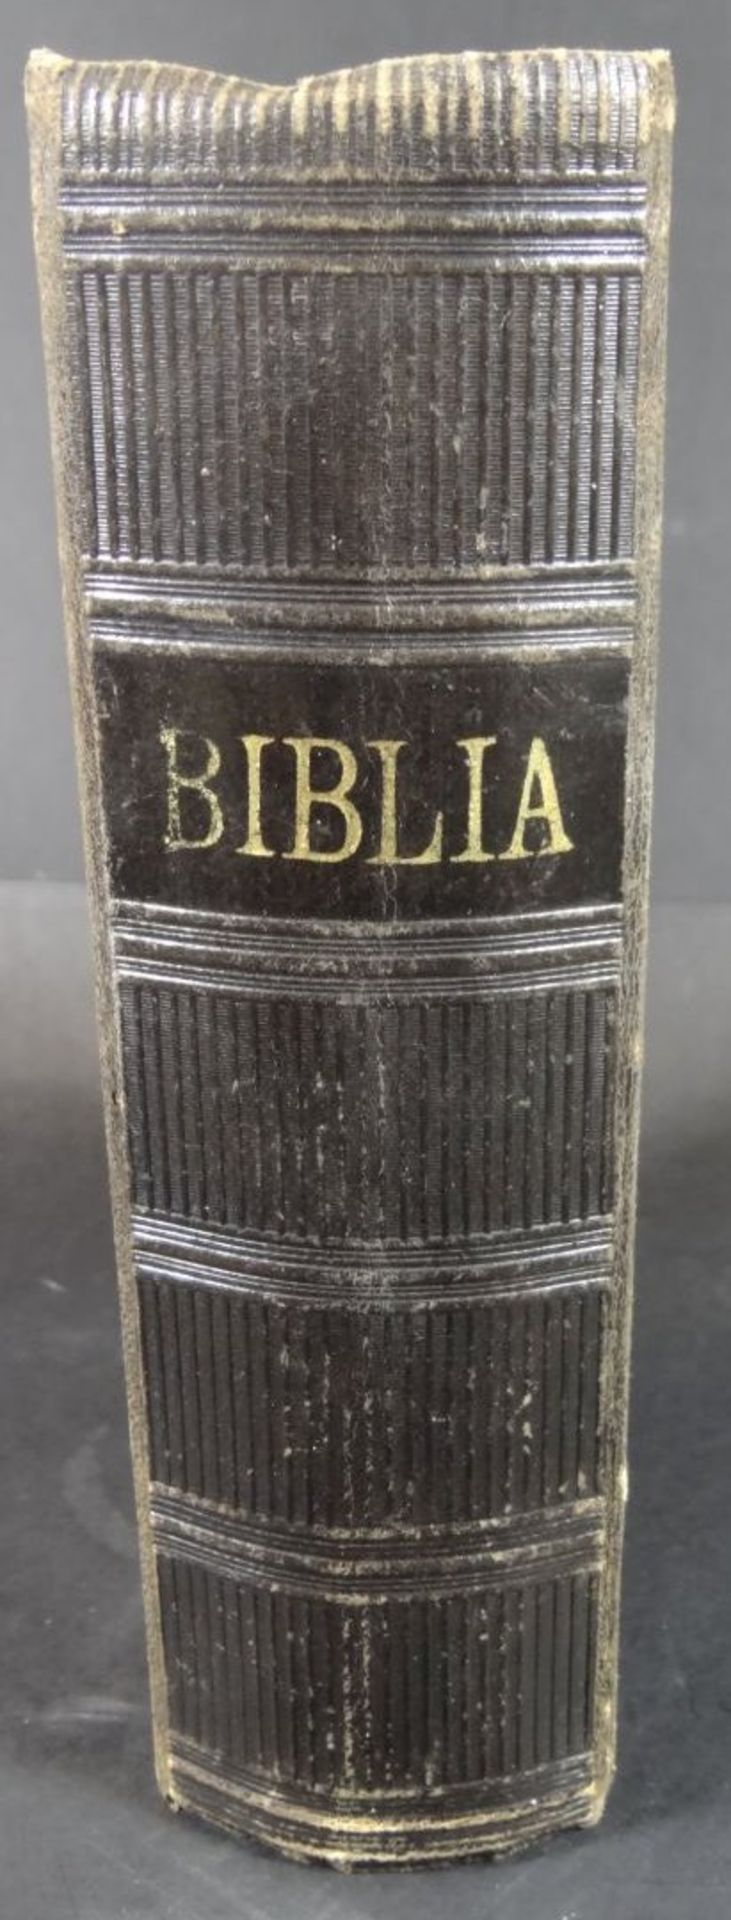 "Biblia" Die Hl. Schrift 1893, Halle, Alters-u. Gebrauchsspuren- - -22.61 % buyer's premium on the